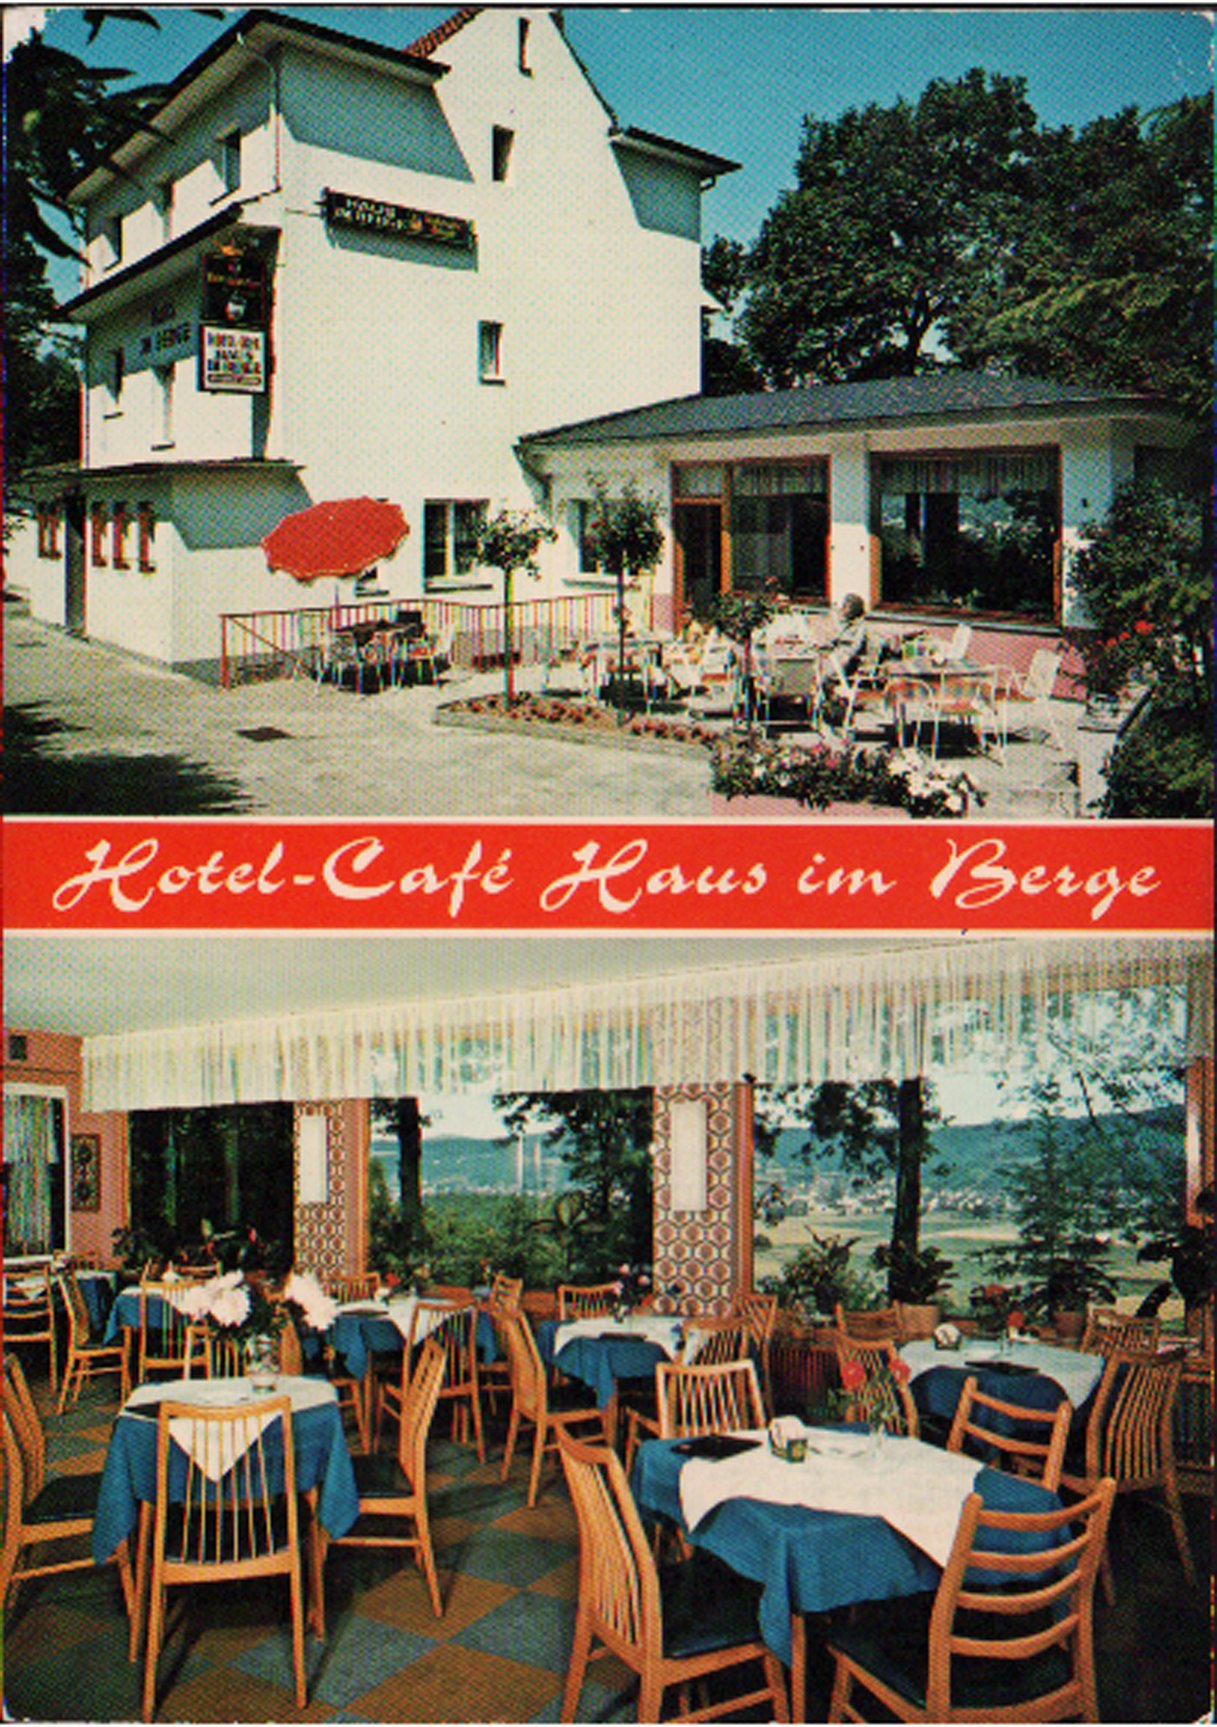 Ansichtskarte Hotel-Café Haus im Berge zwischen Bad Bodendorf und Sinzig (Robert Cornely Verlag, 9837 Bad Wörishofen CC BY-NC-SA)